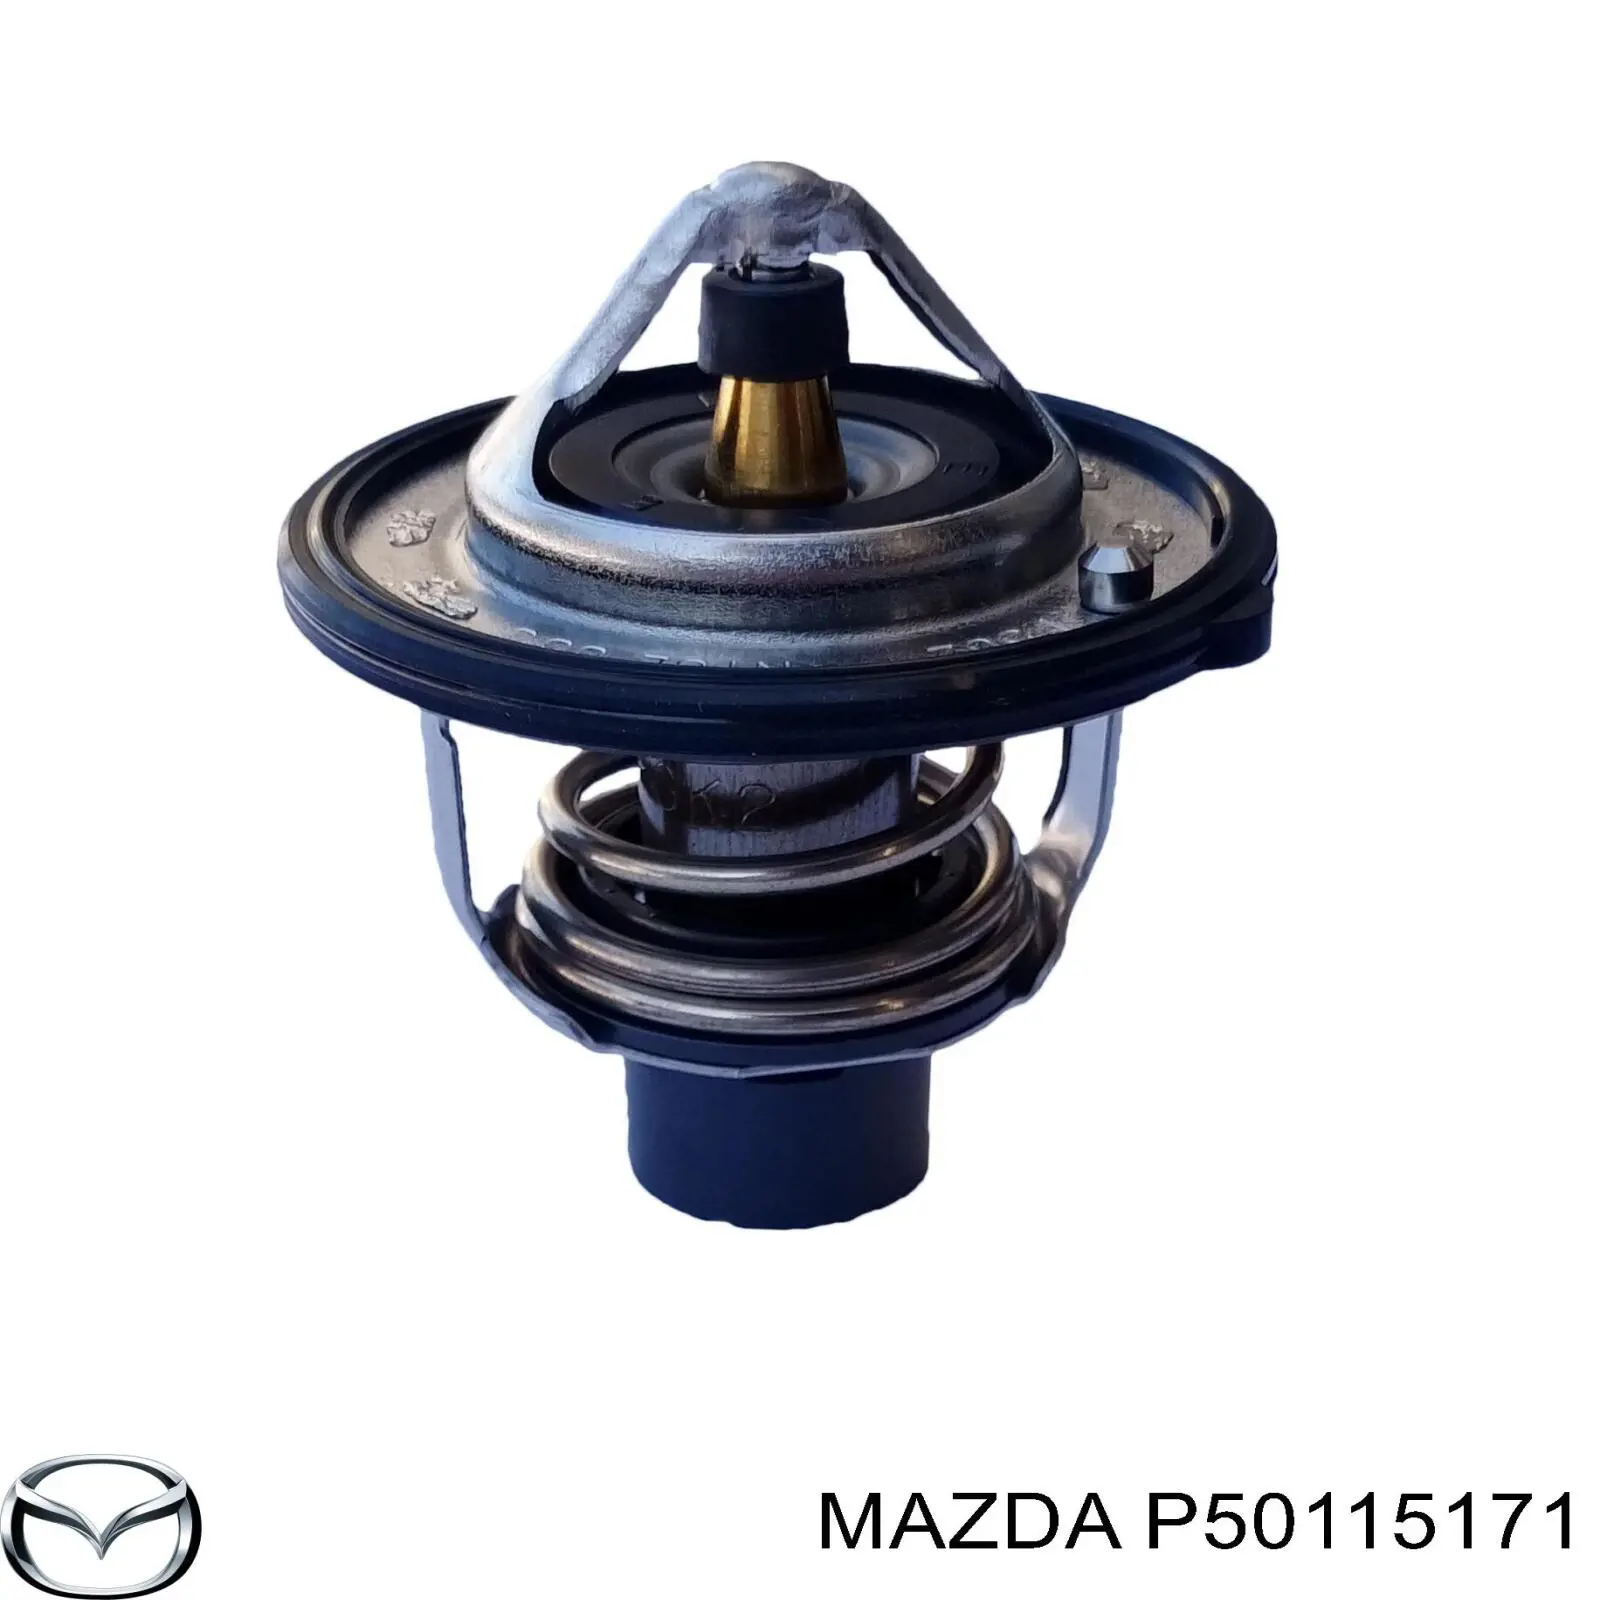 Термостат Мазда ЦХ-3 DK (Mazda CX-3)